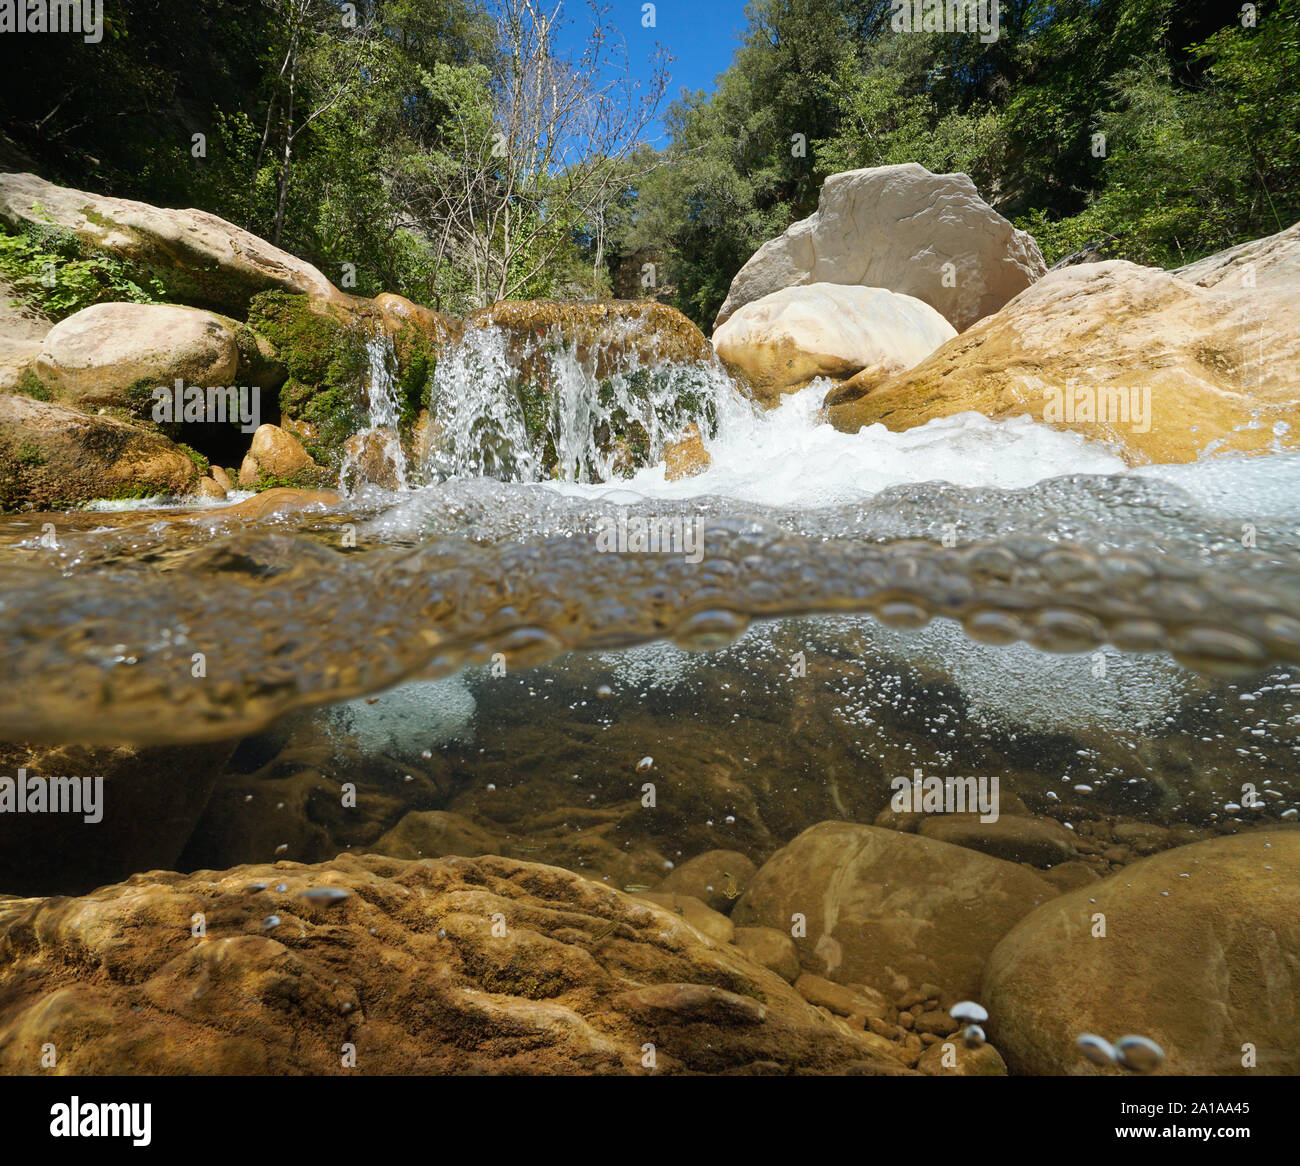 Flusso rocciosa con acqua fluente, vista suddivisa al di sopra e al di sotto della superficie dell'acqua, la spagna, La fiume Muga, la Catalogna Foto Stock